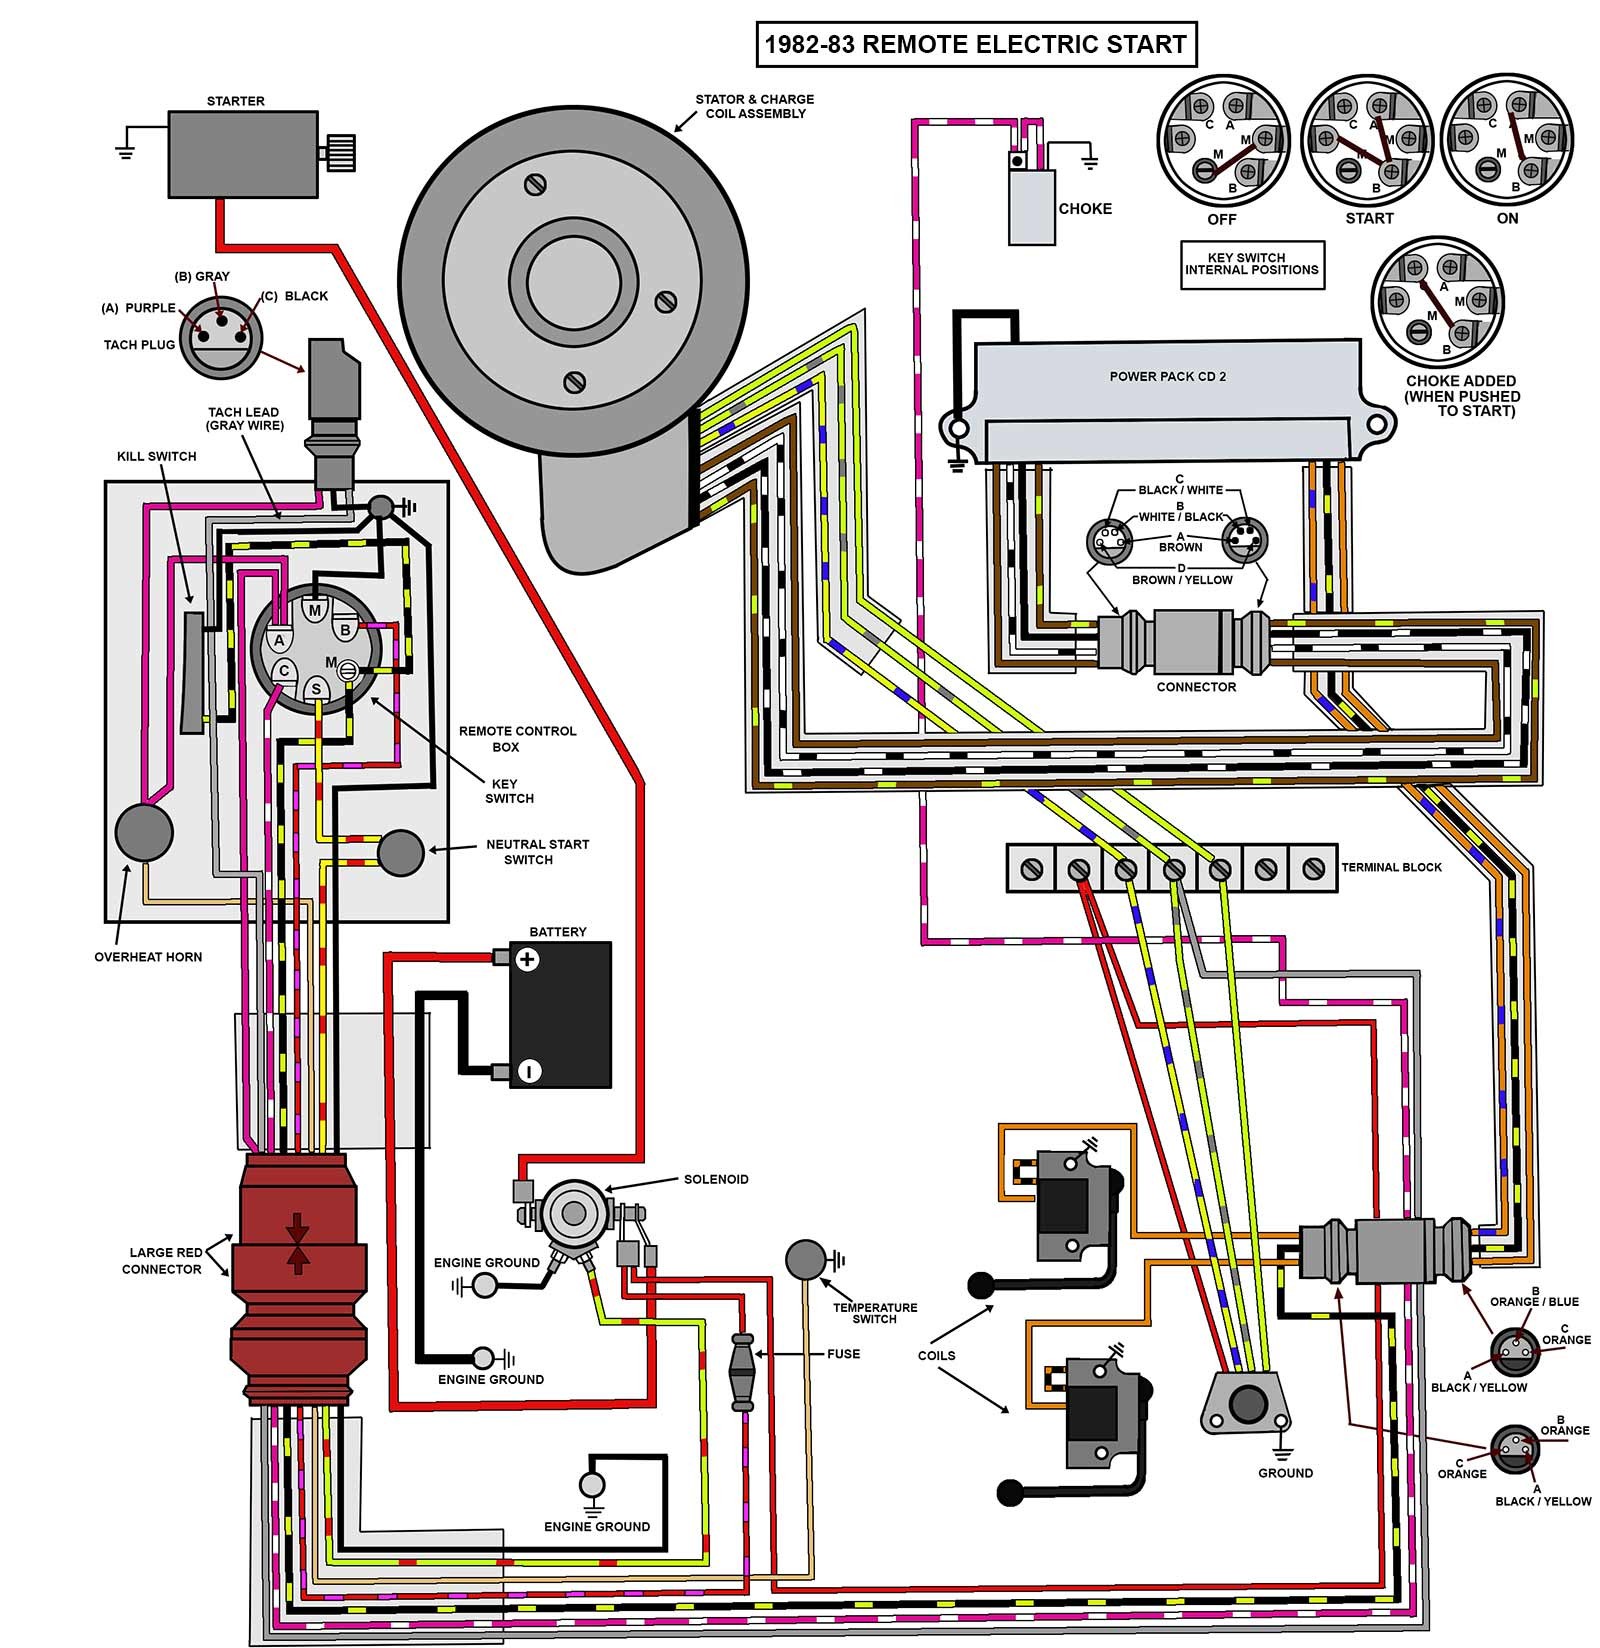 25 35 82 83 Elec Remote Evinrude Wiring Diagram Outboards